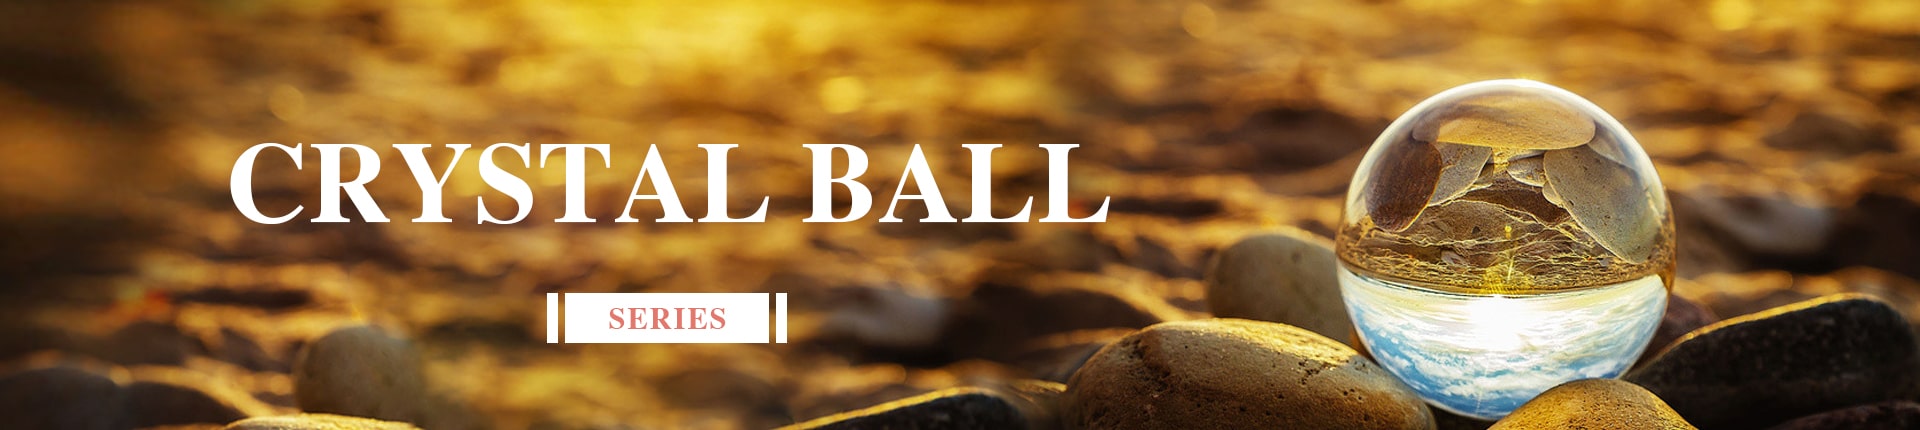 Natural - Crystal Ball